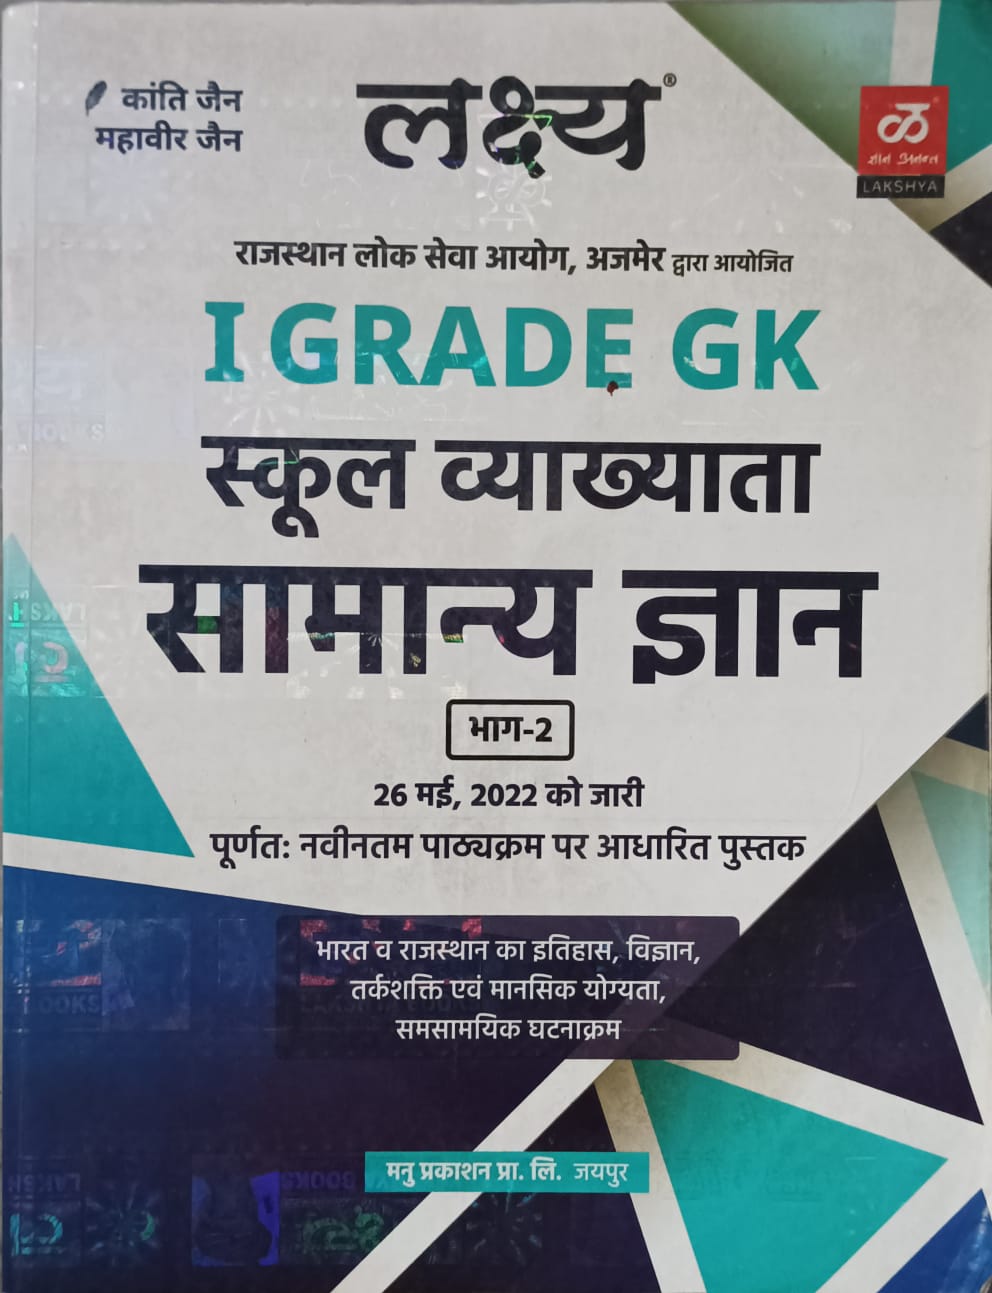 Lakshya 1st grade GK (school lecturer)ganral knowledge